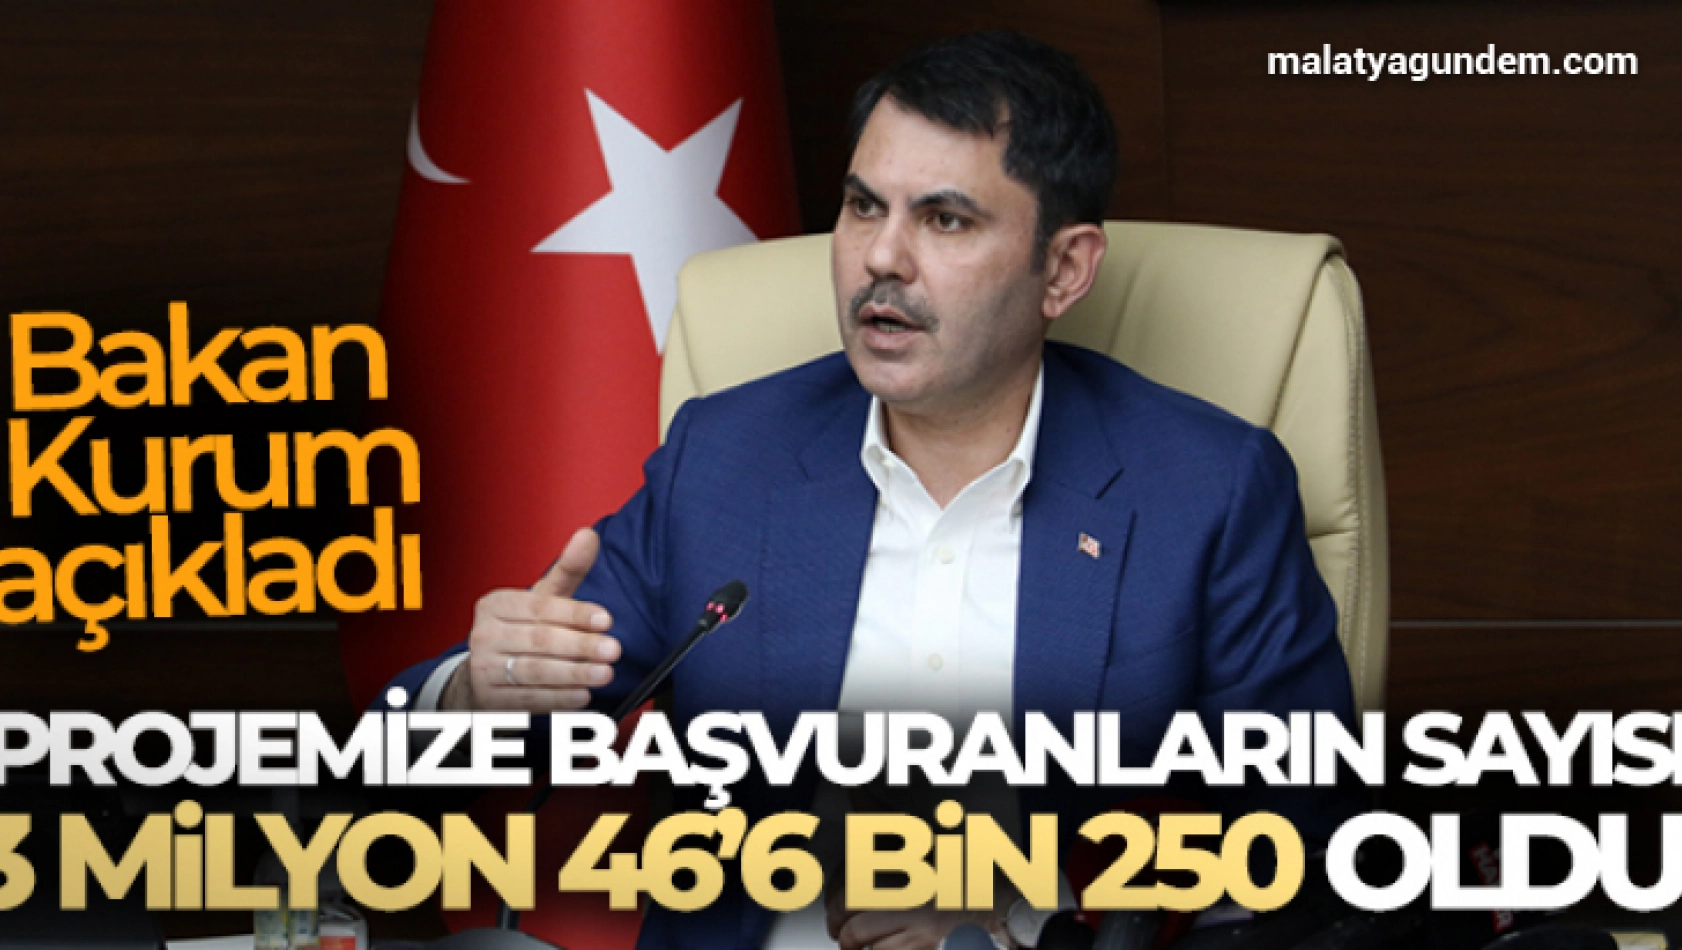 Bakan Kurum: 'Projemize başvuranların sayısı 3 milyon 466 bin 250 oldu'